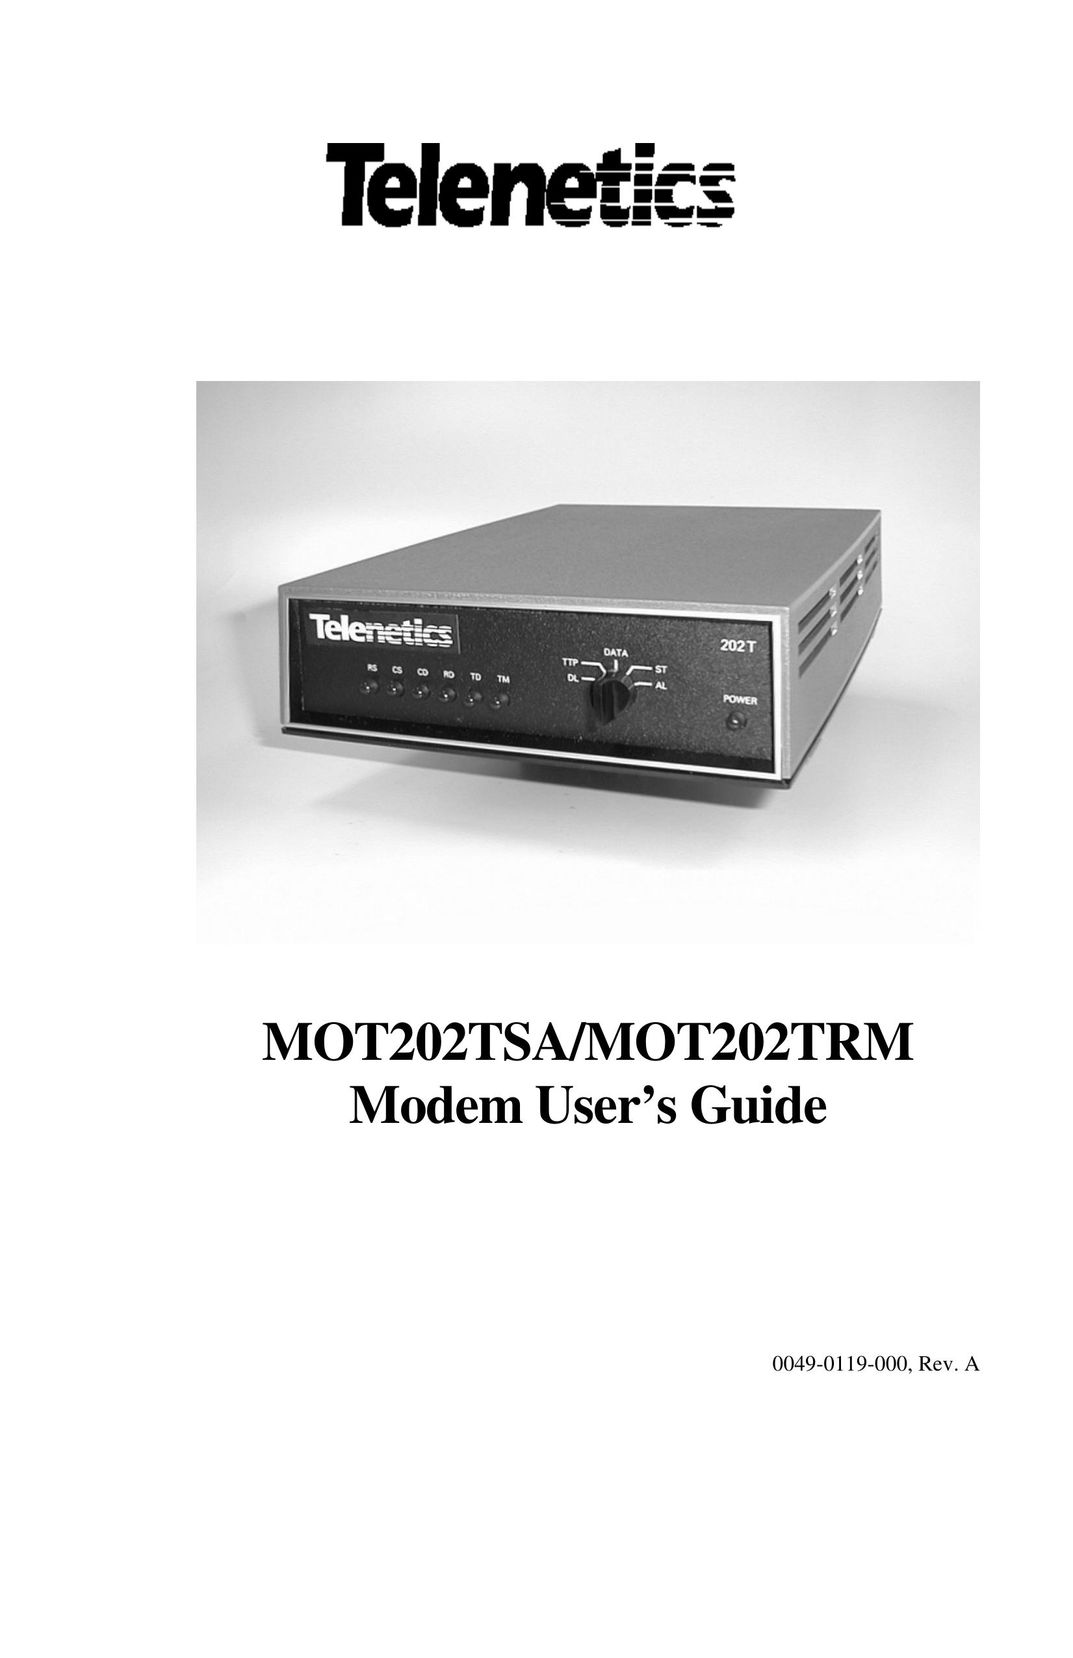 Telenetics MOT202TSA Network Card User Manual